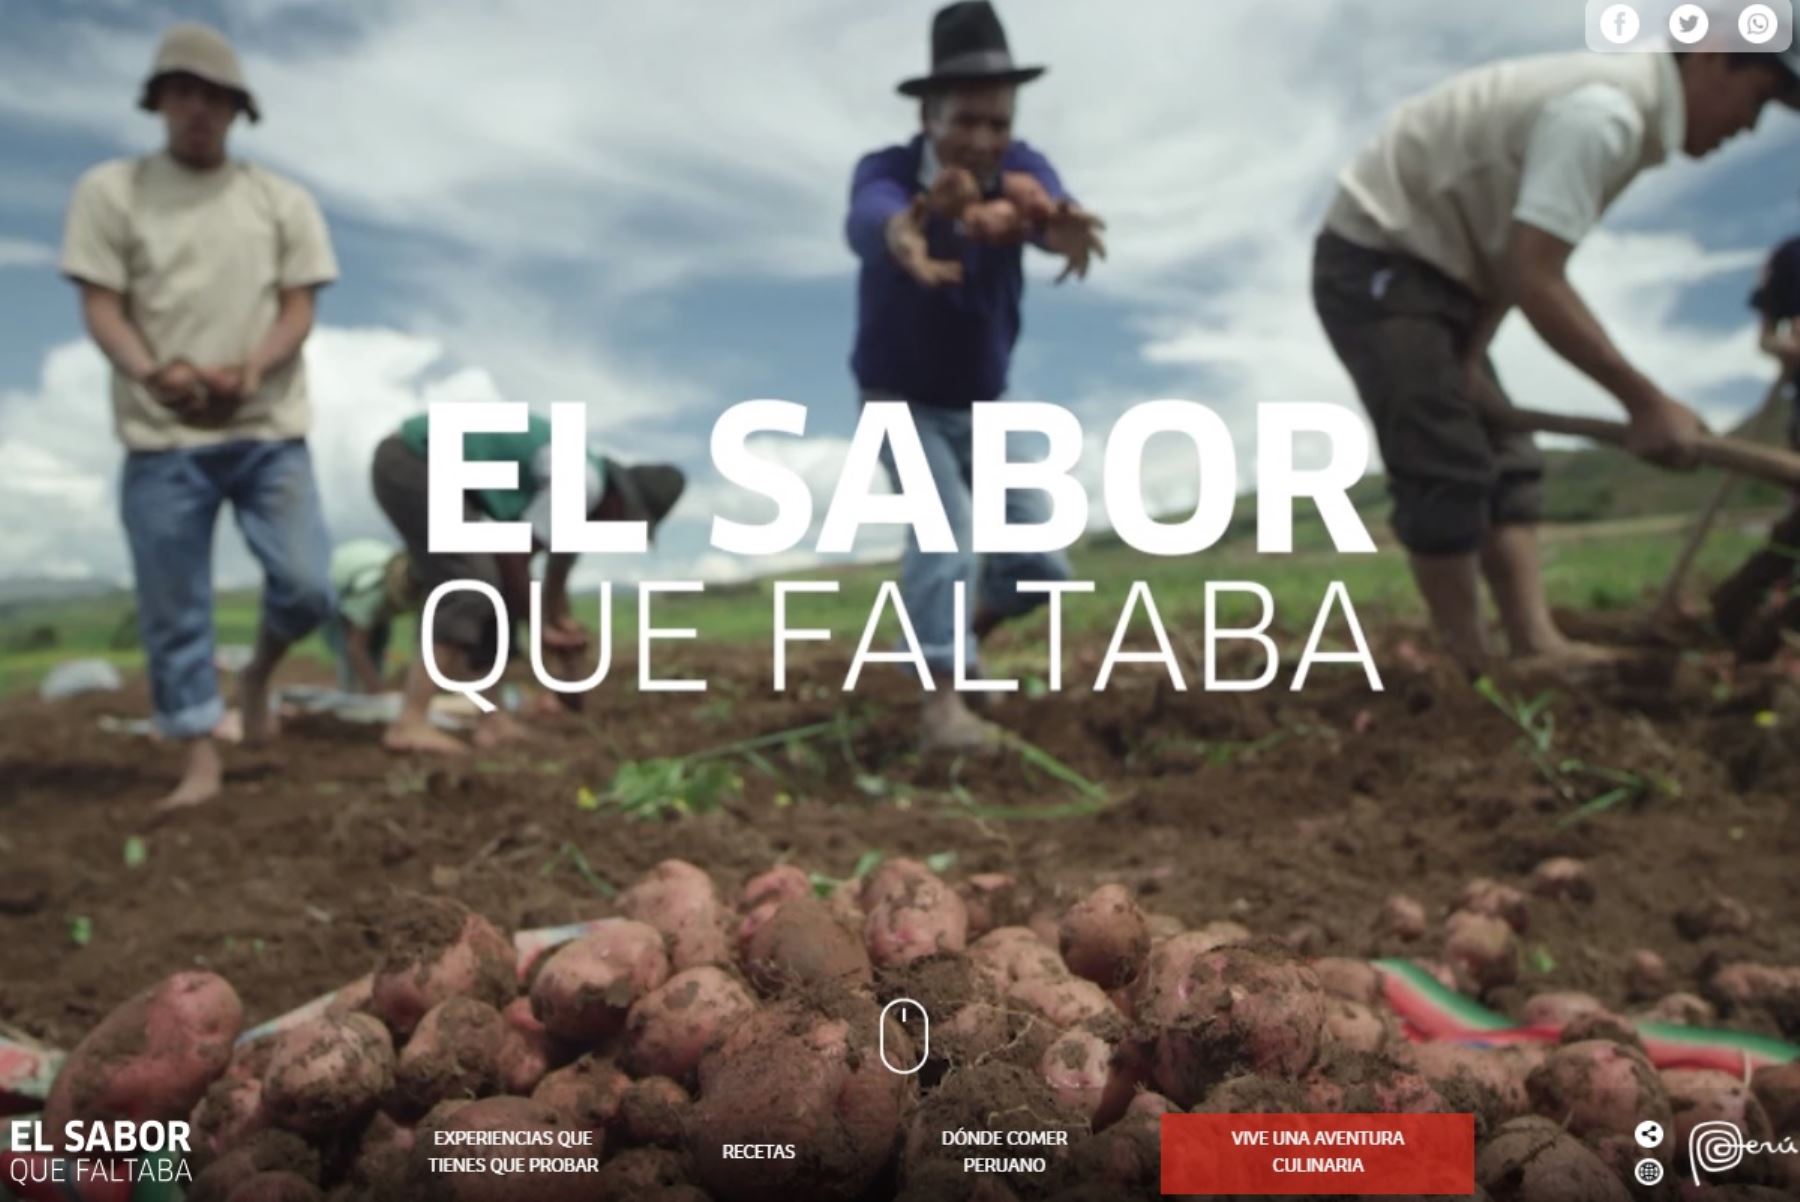 Campaña promocional de la gastronomía peruana "El sabor que faltaba". Foto: internet/medios.